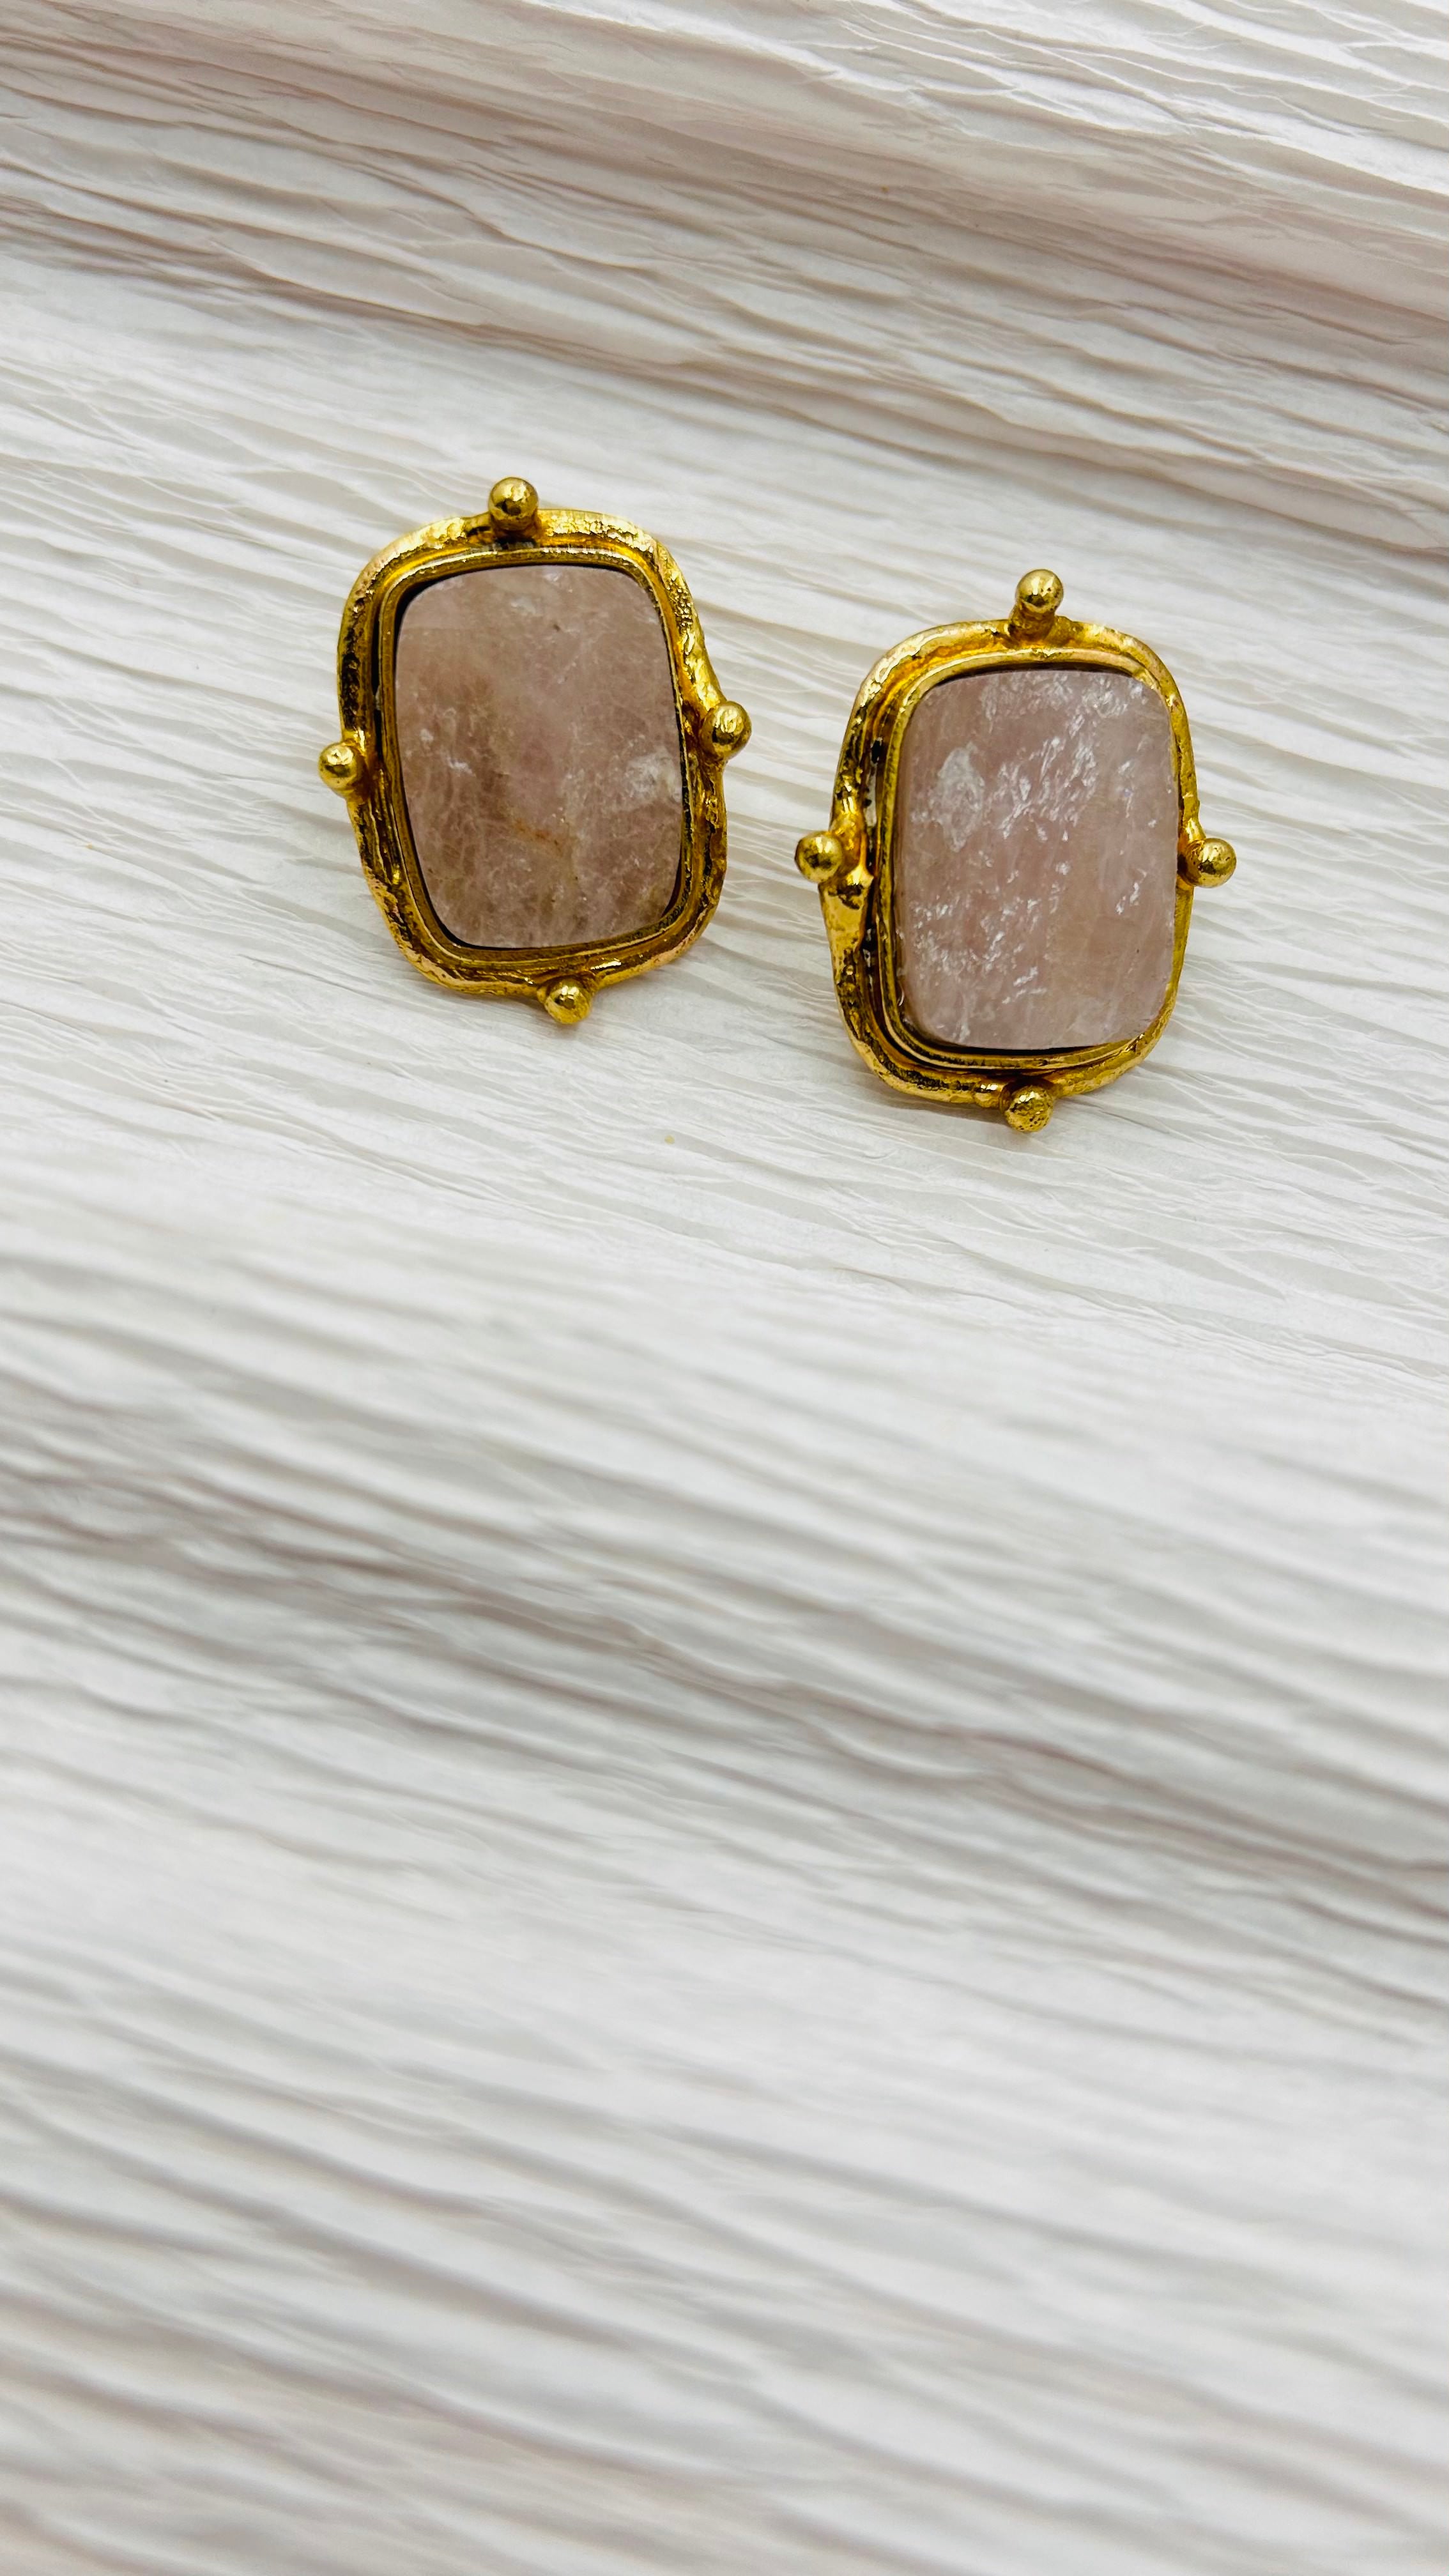 Isabella Semi Precious Stone Stud Earrings